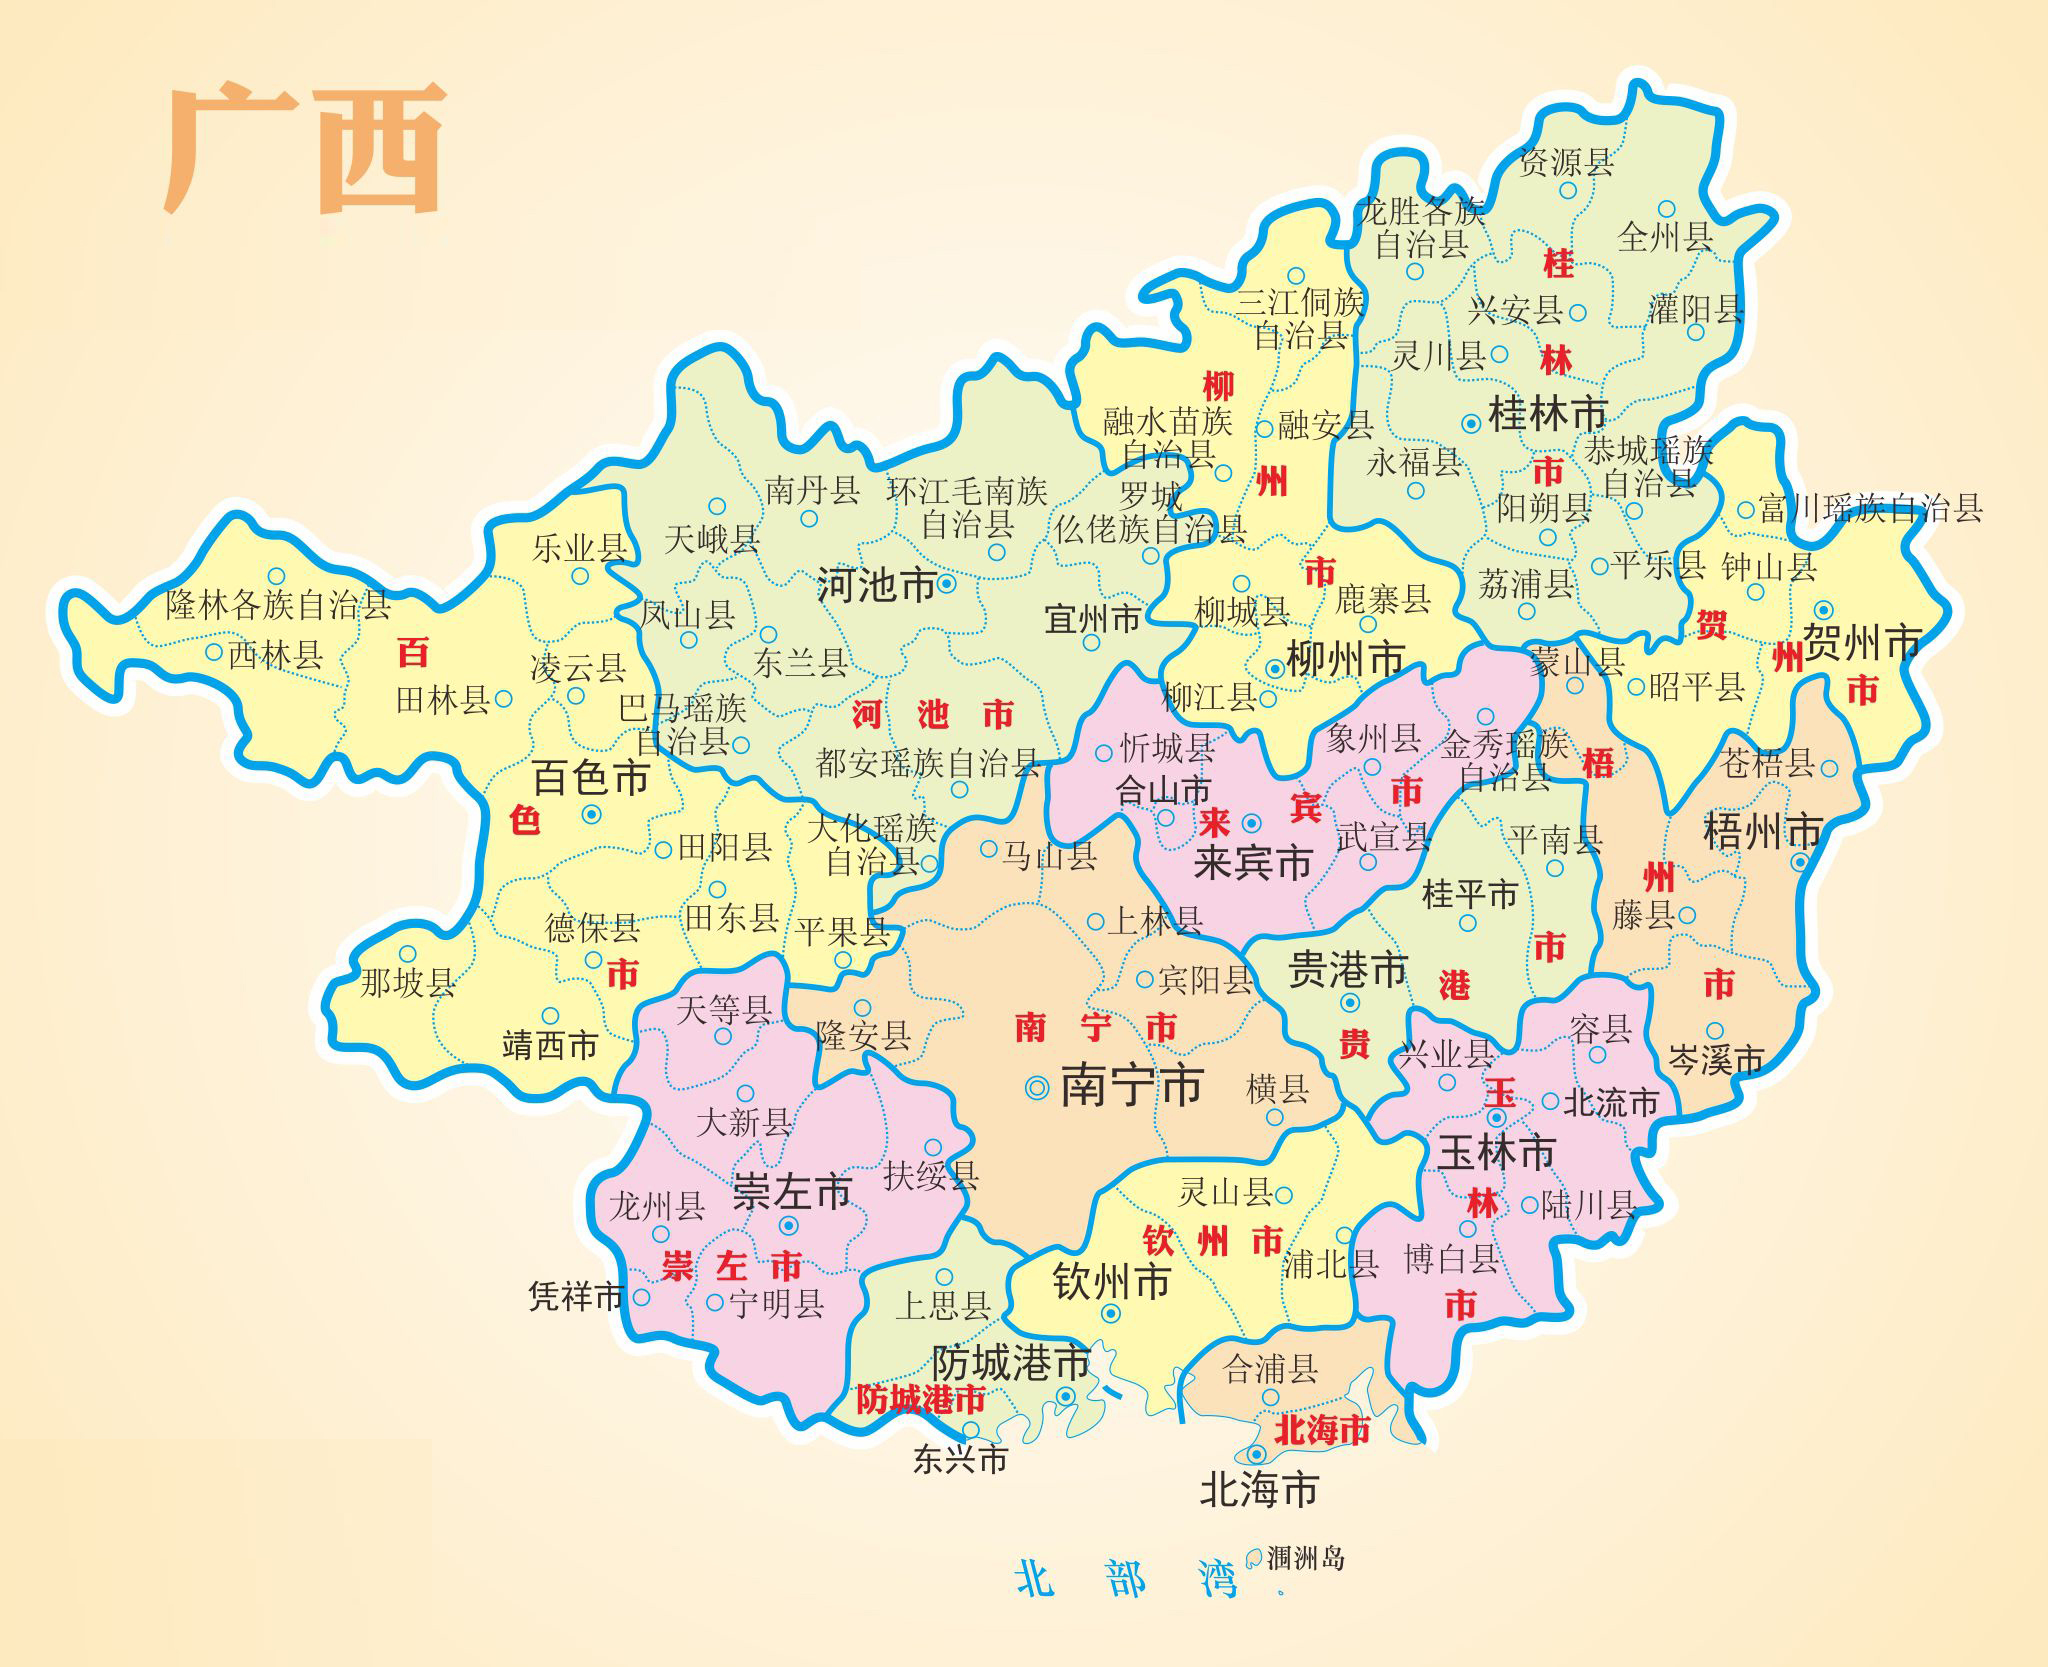 八桂大地谱写新时代华章:广西壮族自治区成立60周年